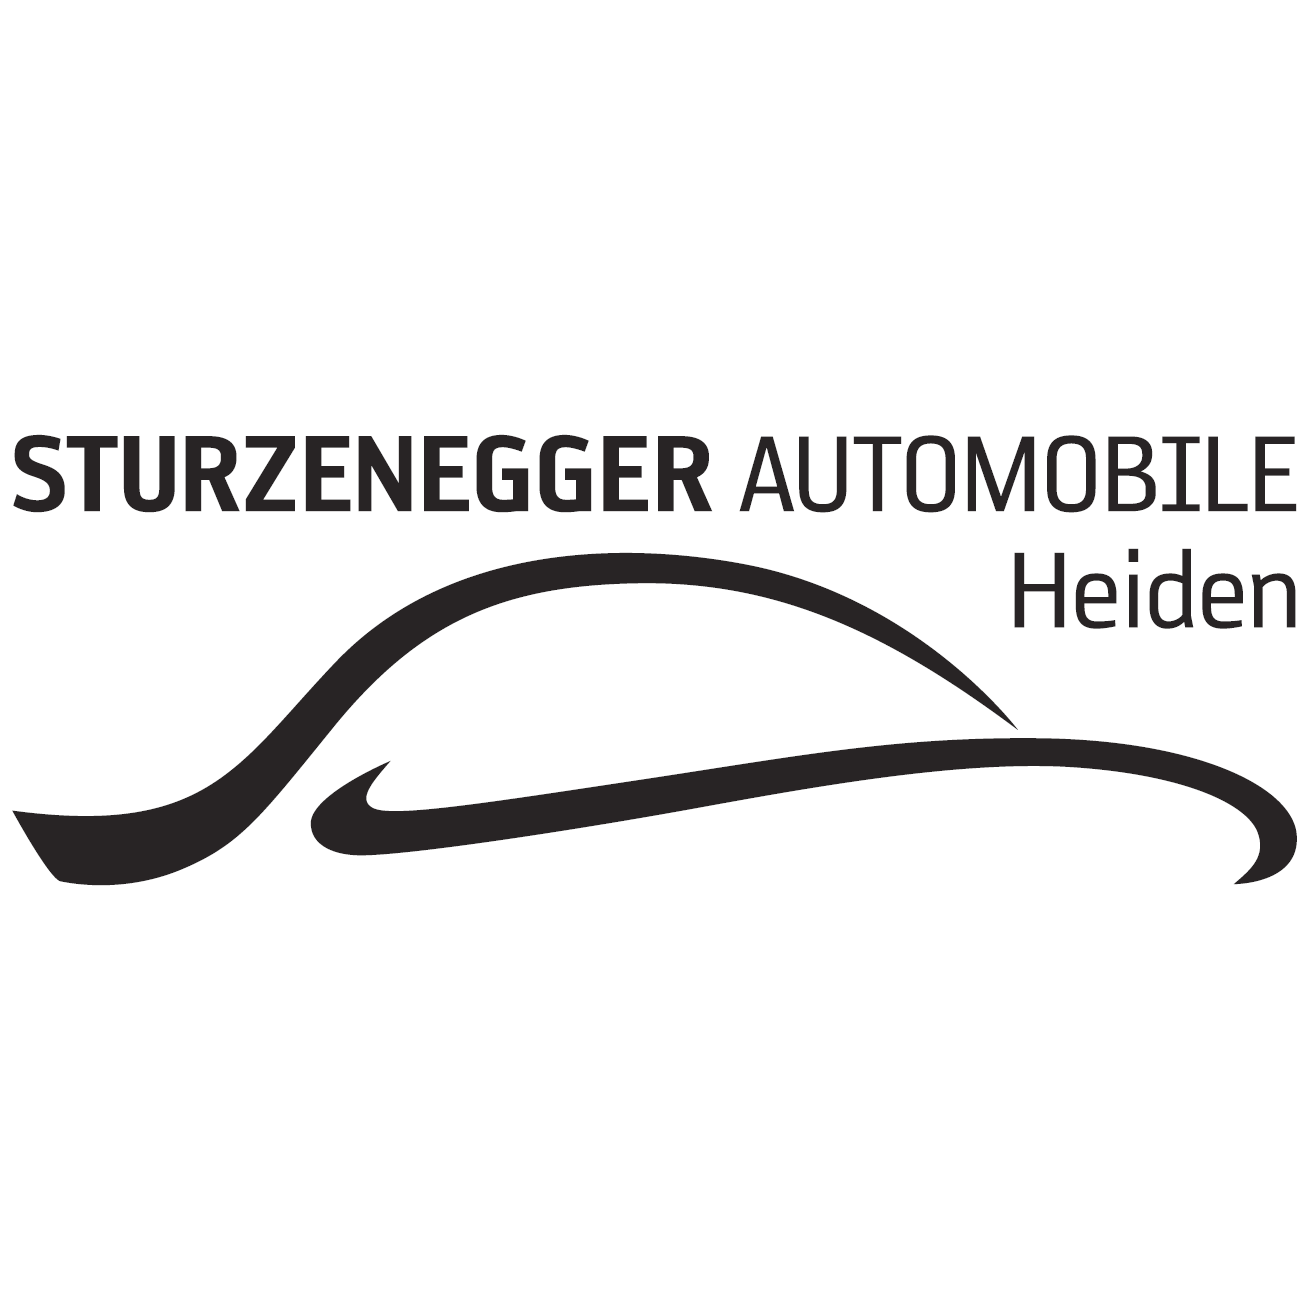 Sturzenegger Automobile Heiden GmbH Logo